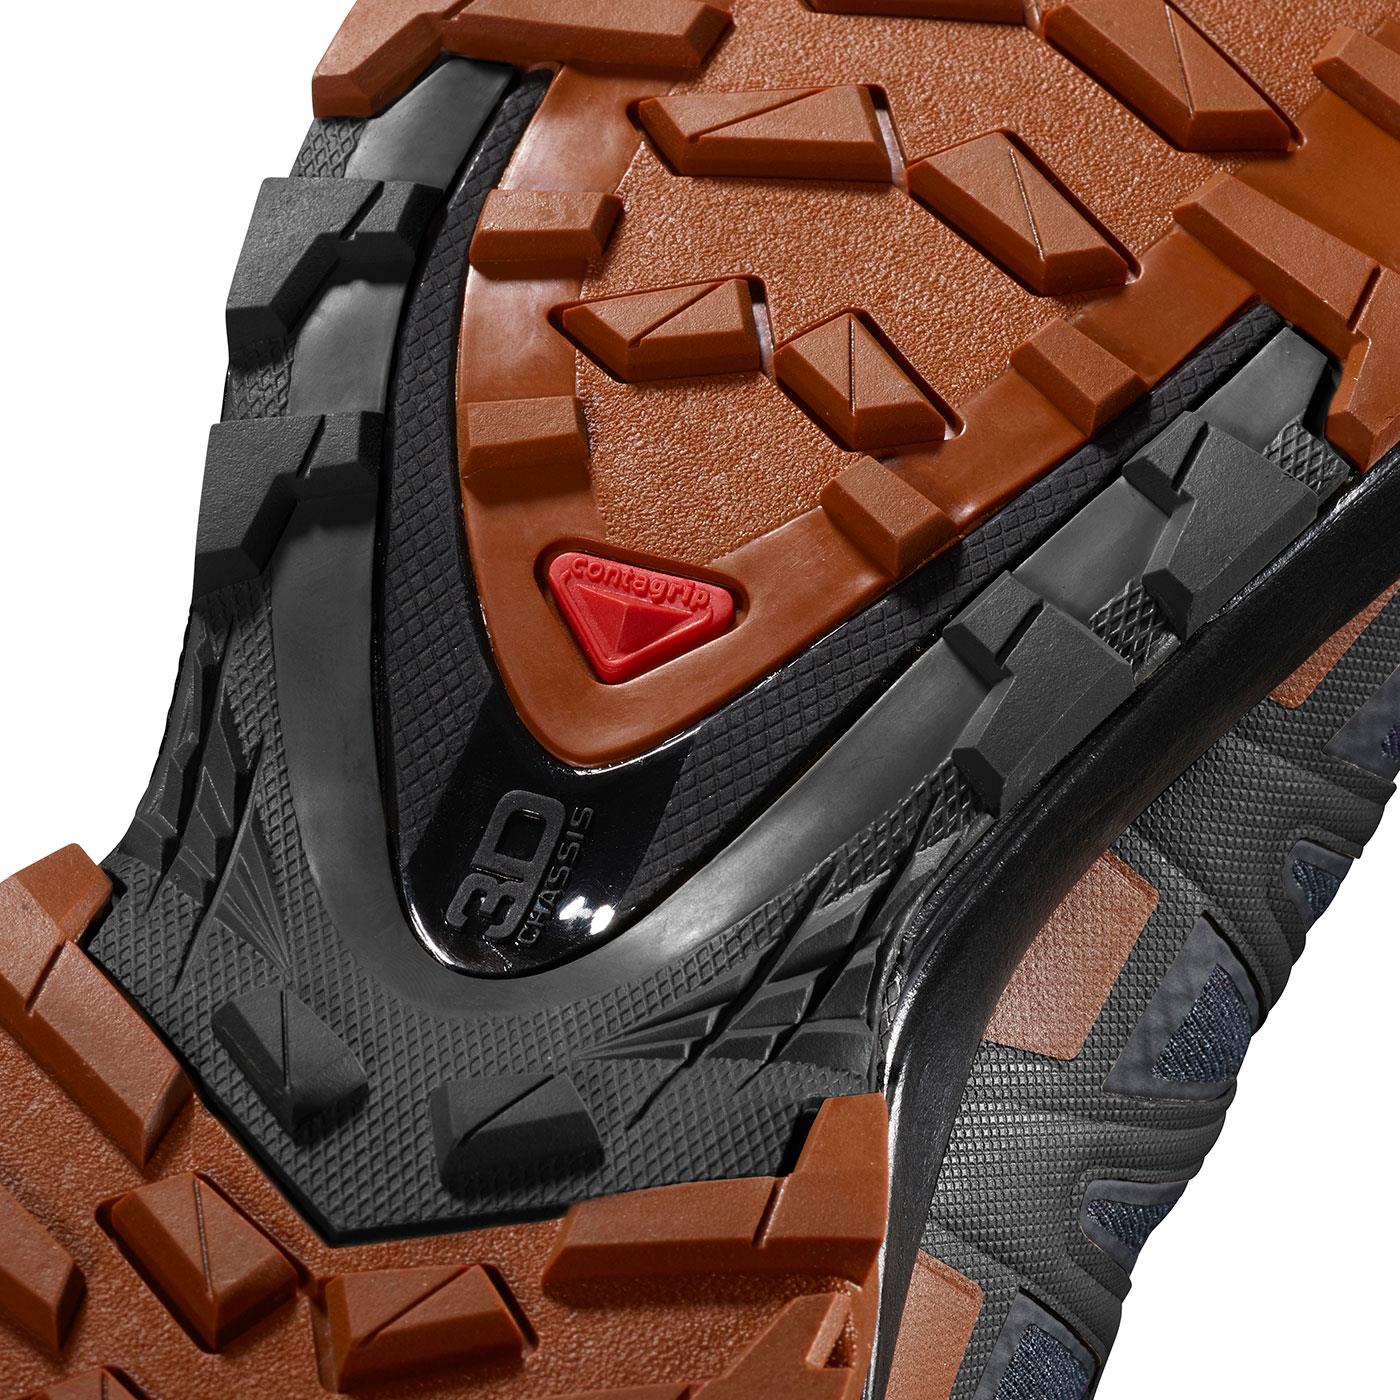  Salomon XA PRO 3D v8 GTX Erkek Ayakkabısı